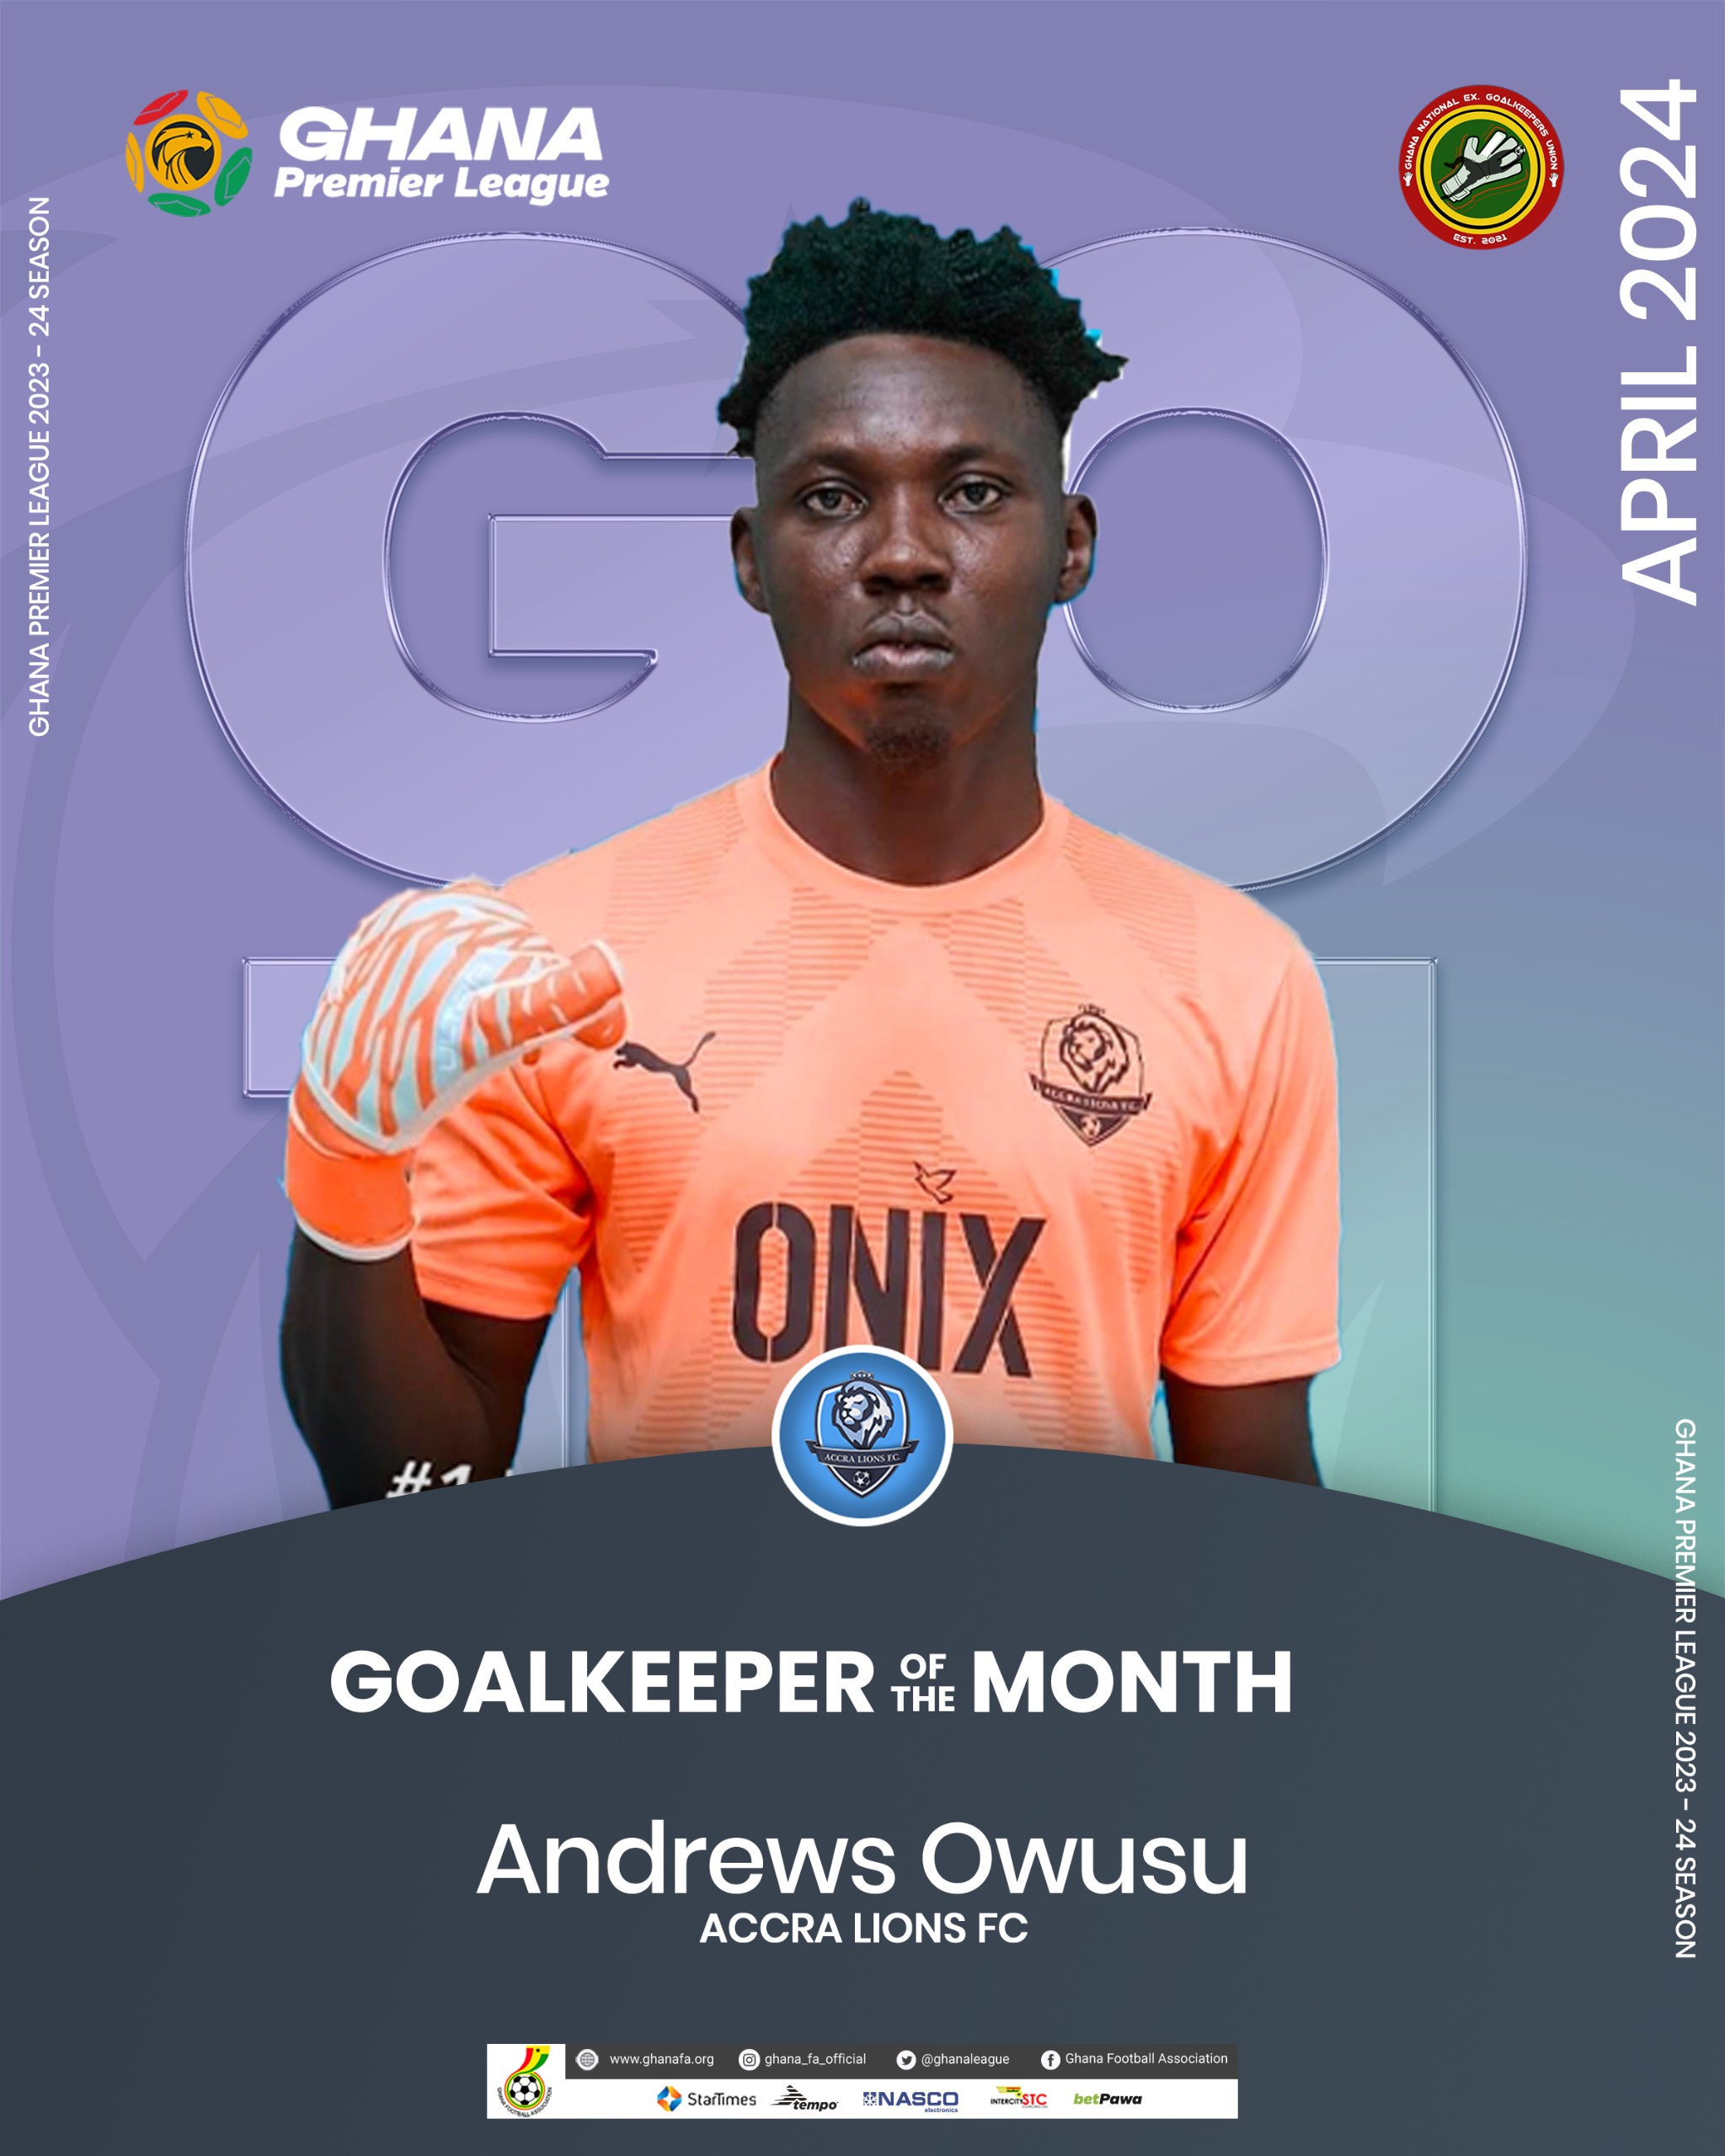 Andrews Owusu named Goalkeeper of the Month for April